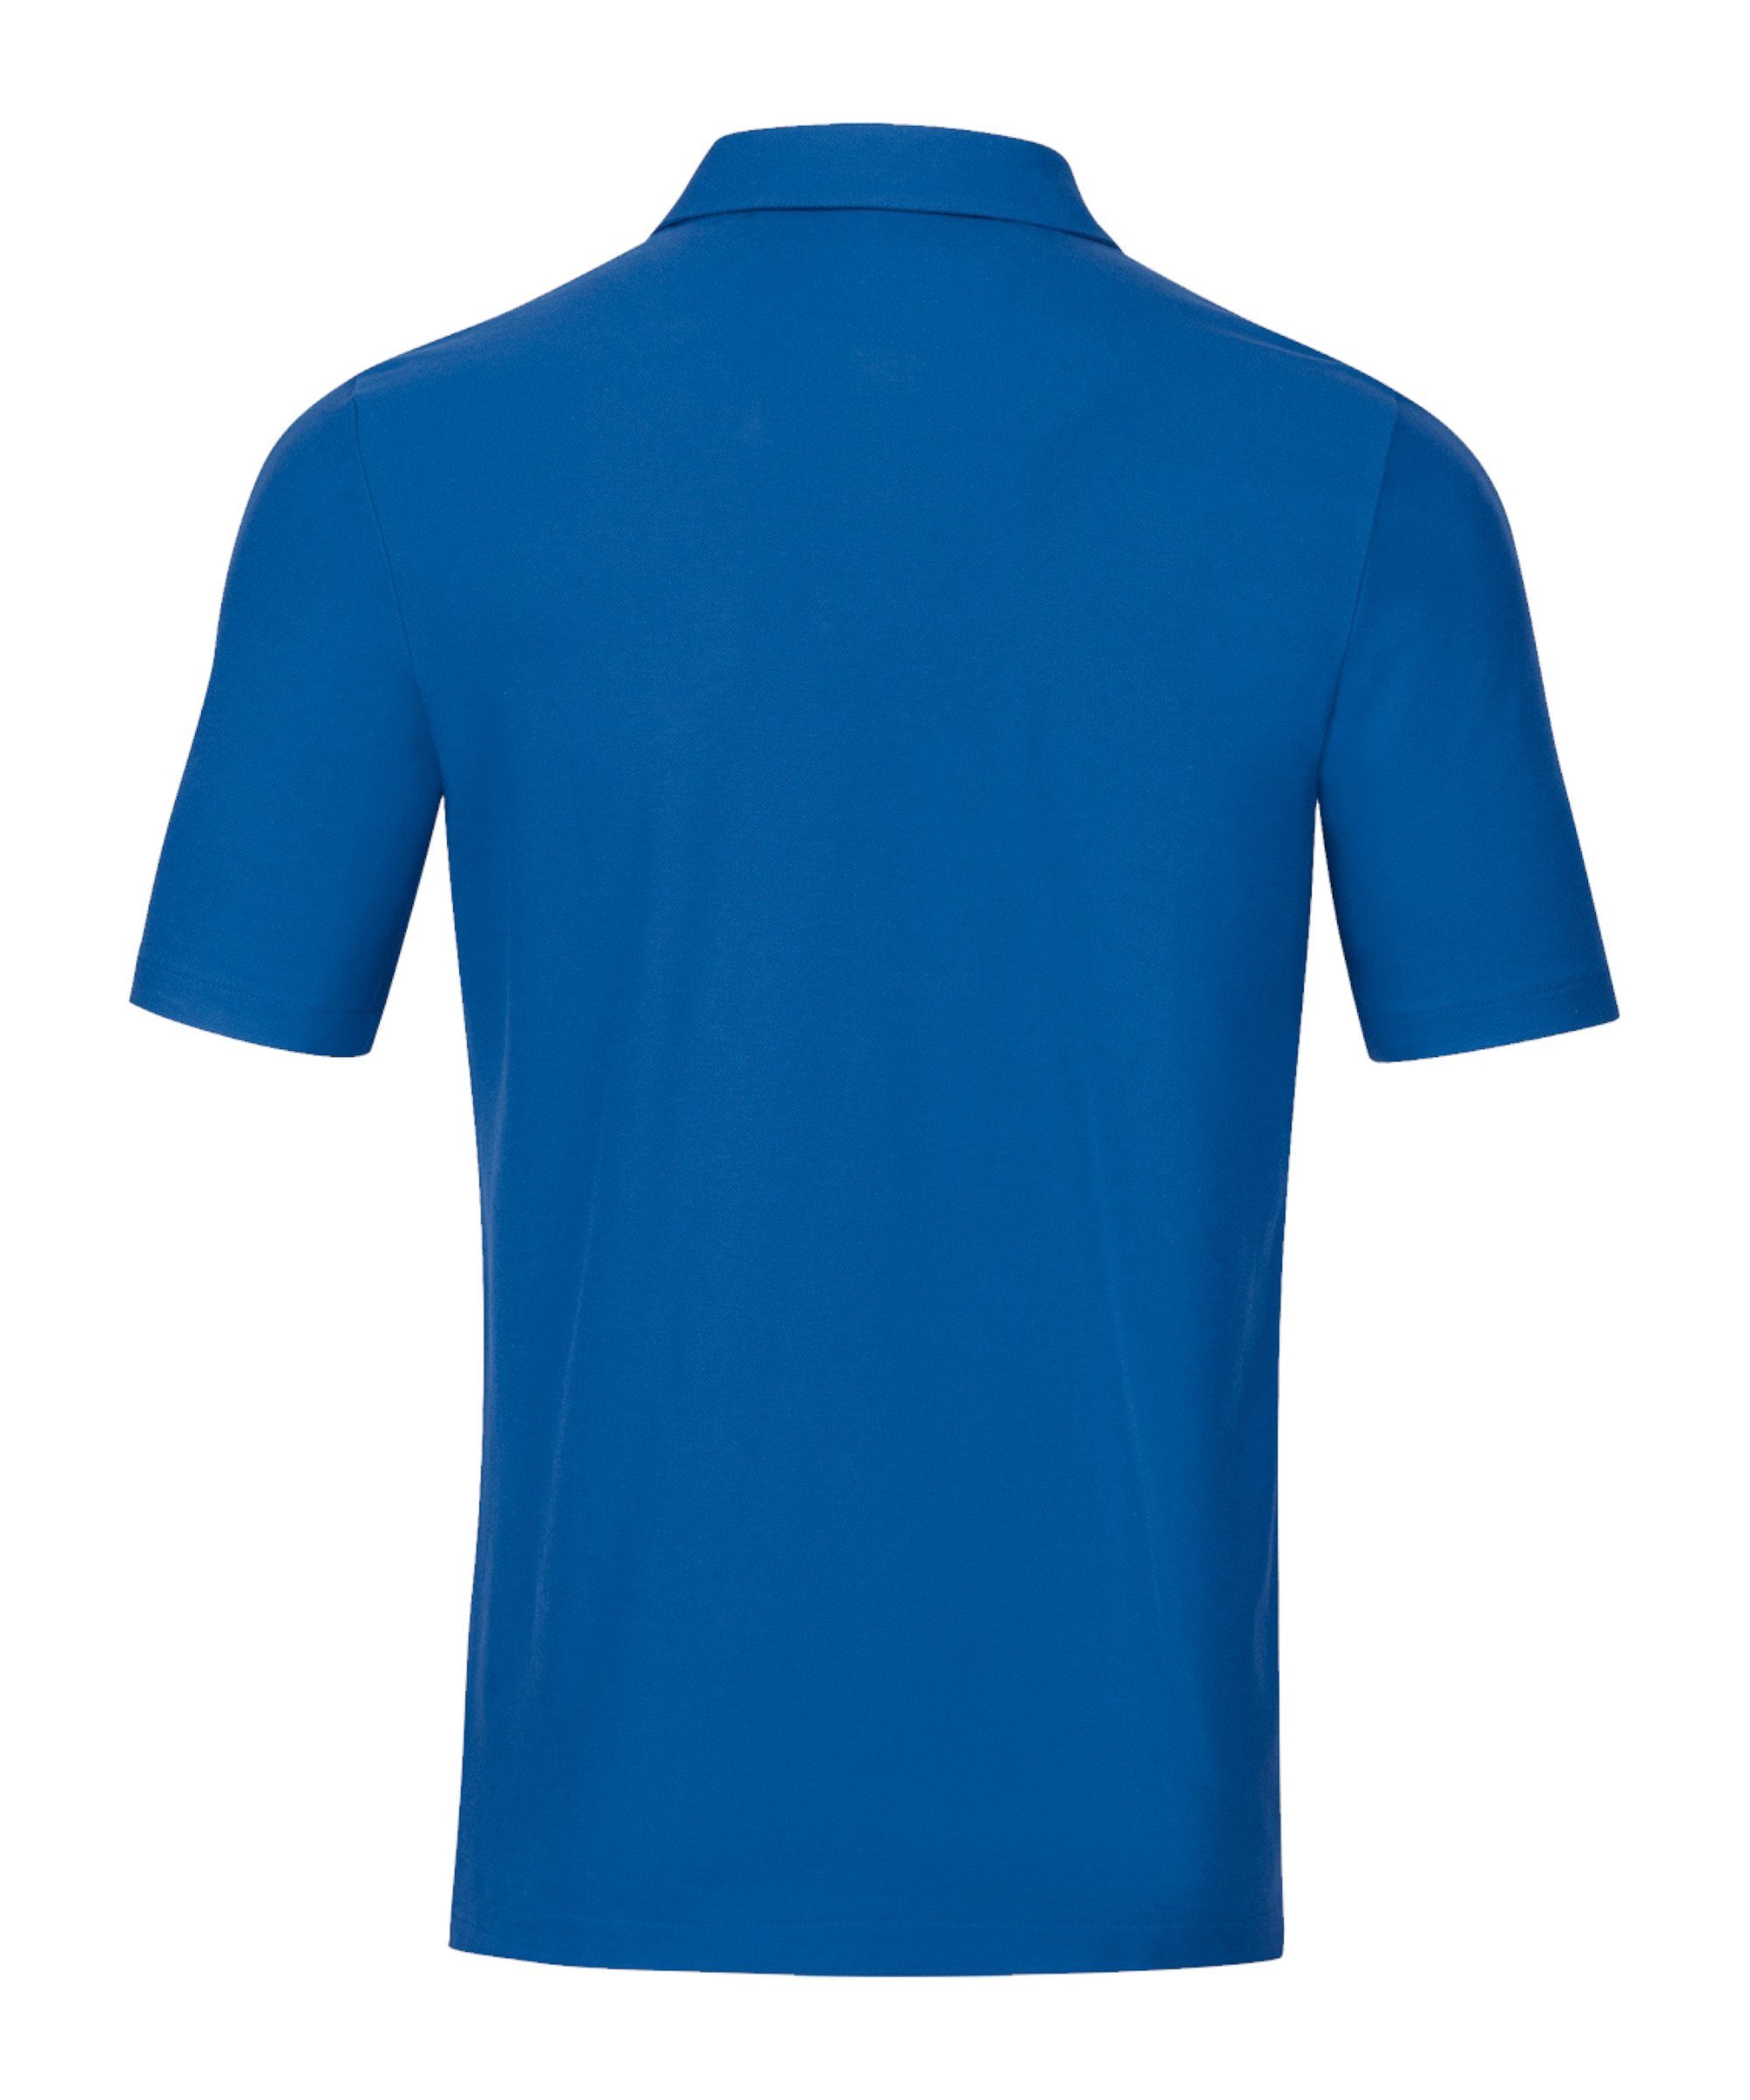 blauweiss Poloshirt Jako Base default Poloshirt